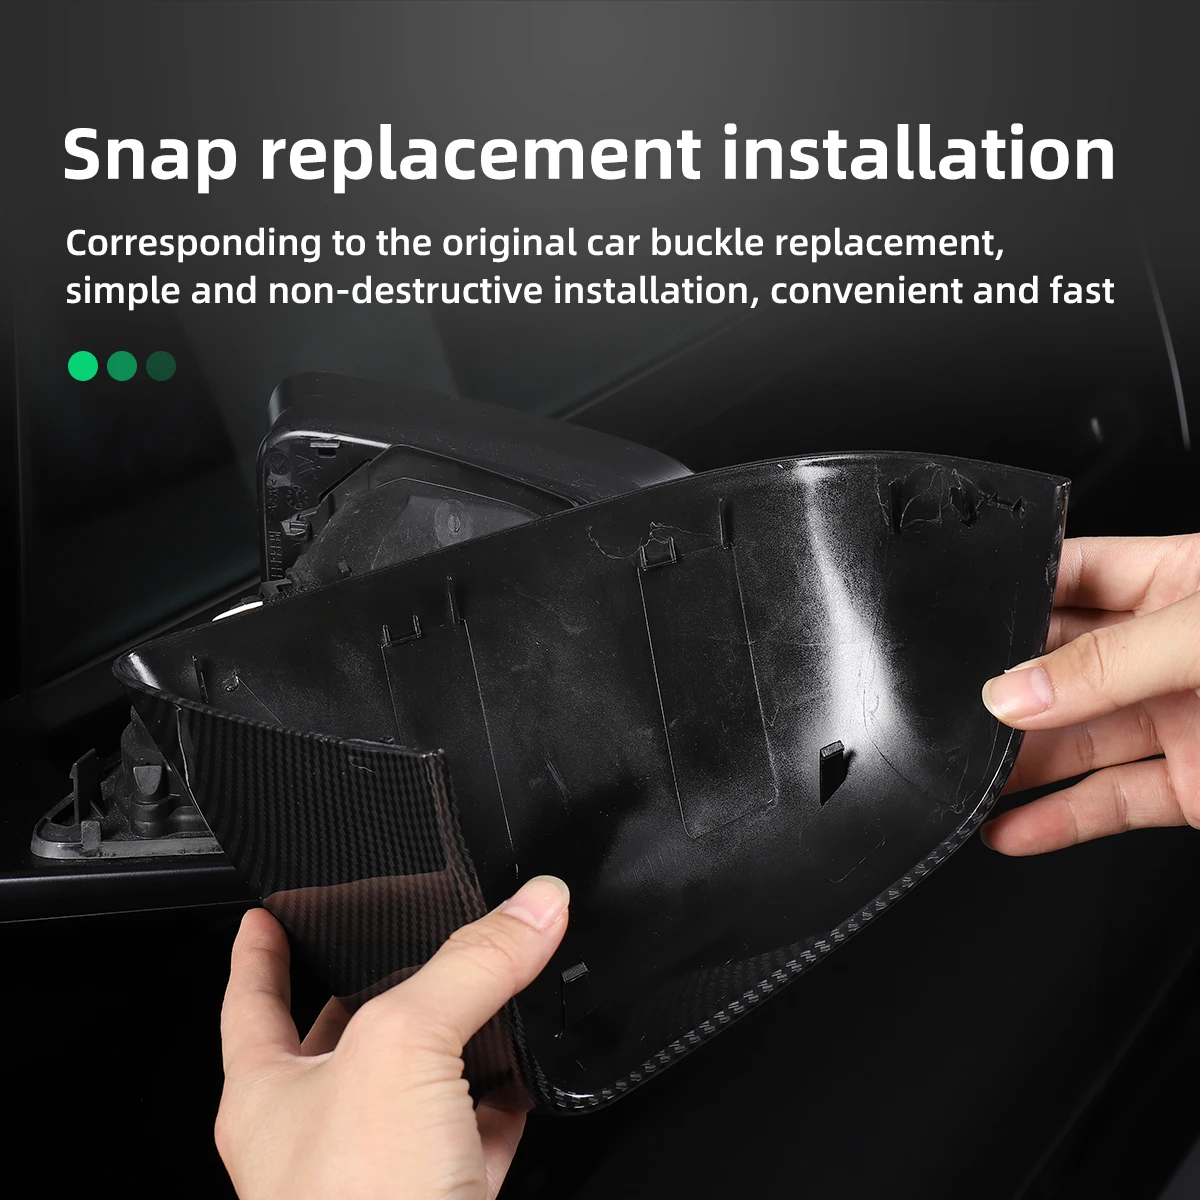 Für Tesla Model 3 Model Y Auto Rückspiegel Abdeckung Auto Exterior Zubehör  ABS Tür Seite Rückspiegel Shell Ersatz